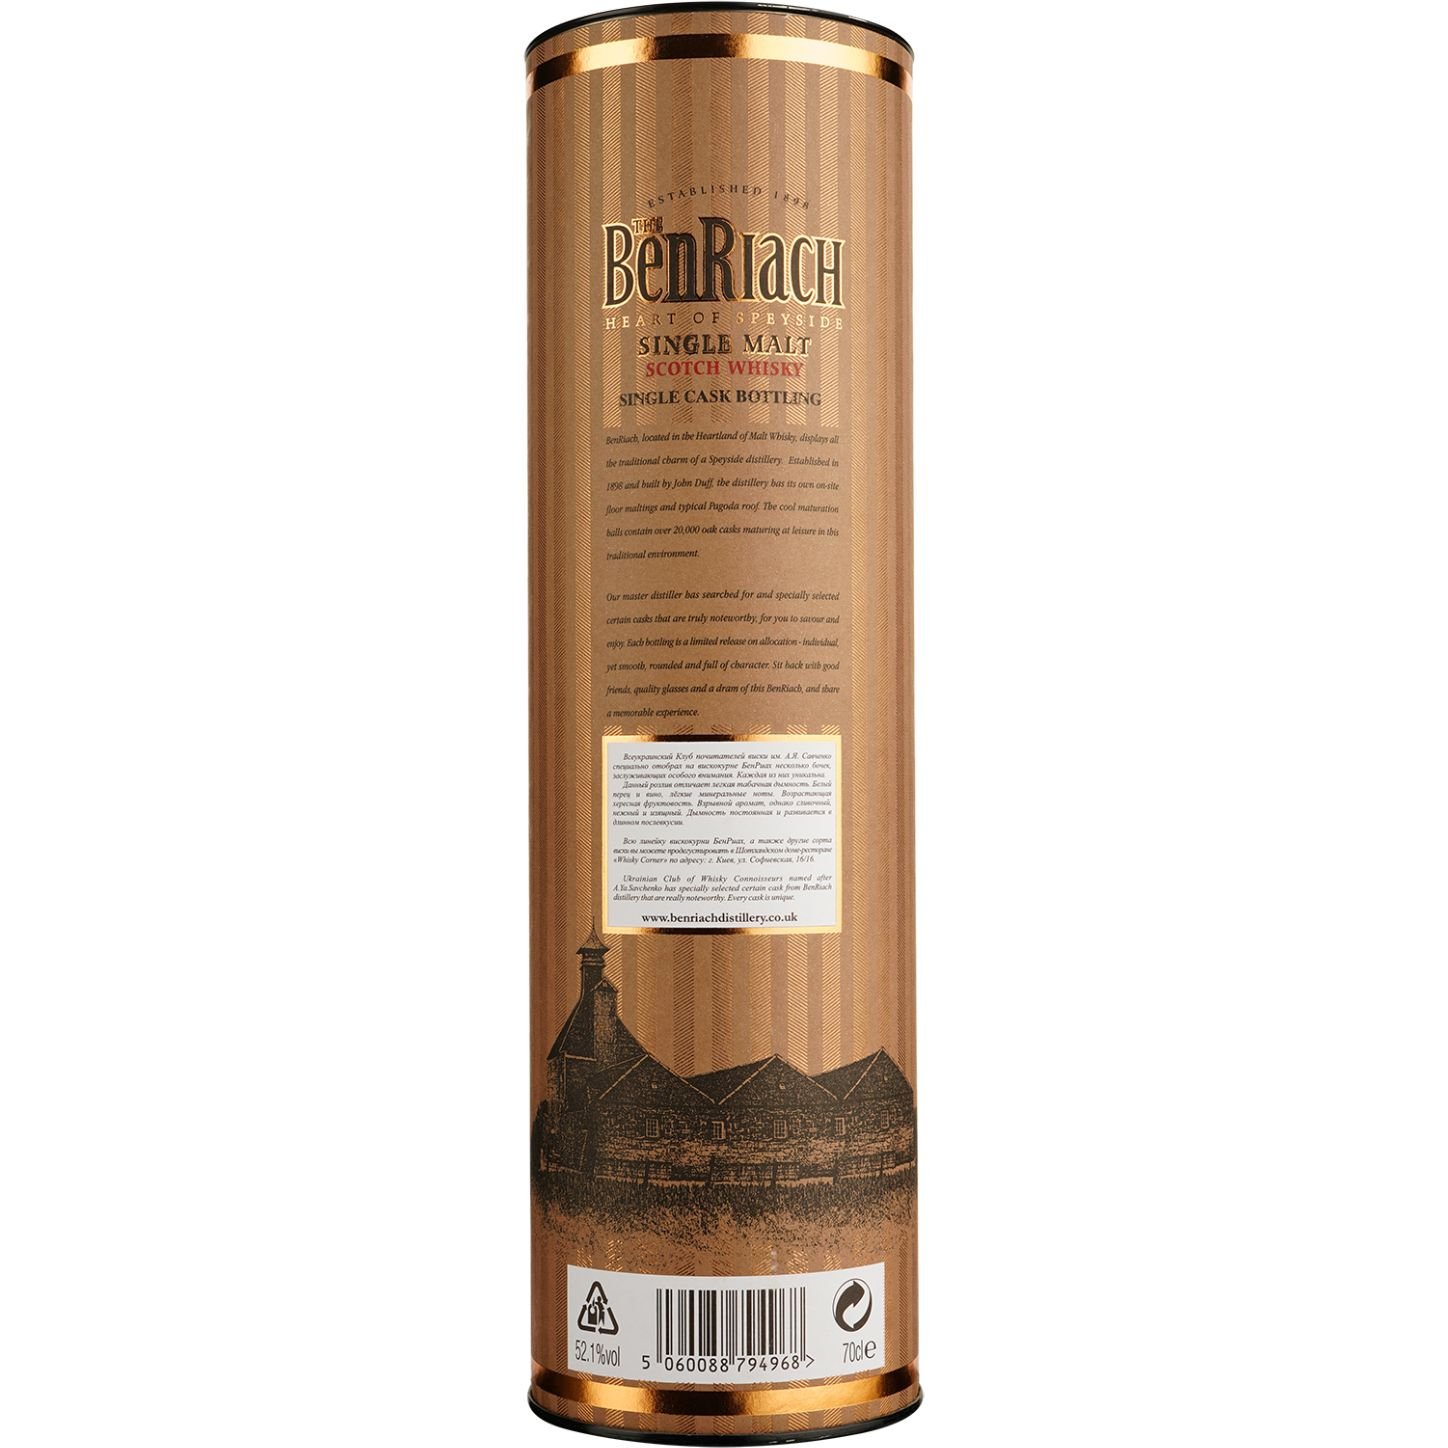 Виски BenRiach 18 Years Old Rum Barrel Cask 1644 Single Malt Scotch Whisky, в подарочной упаковке, 57,6%, 0,7 л - фото 5